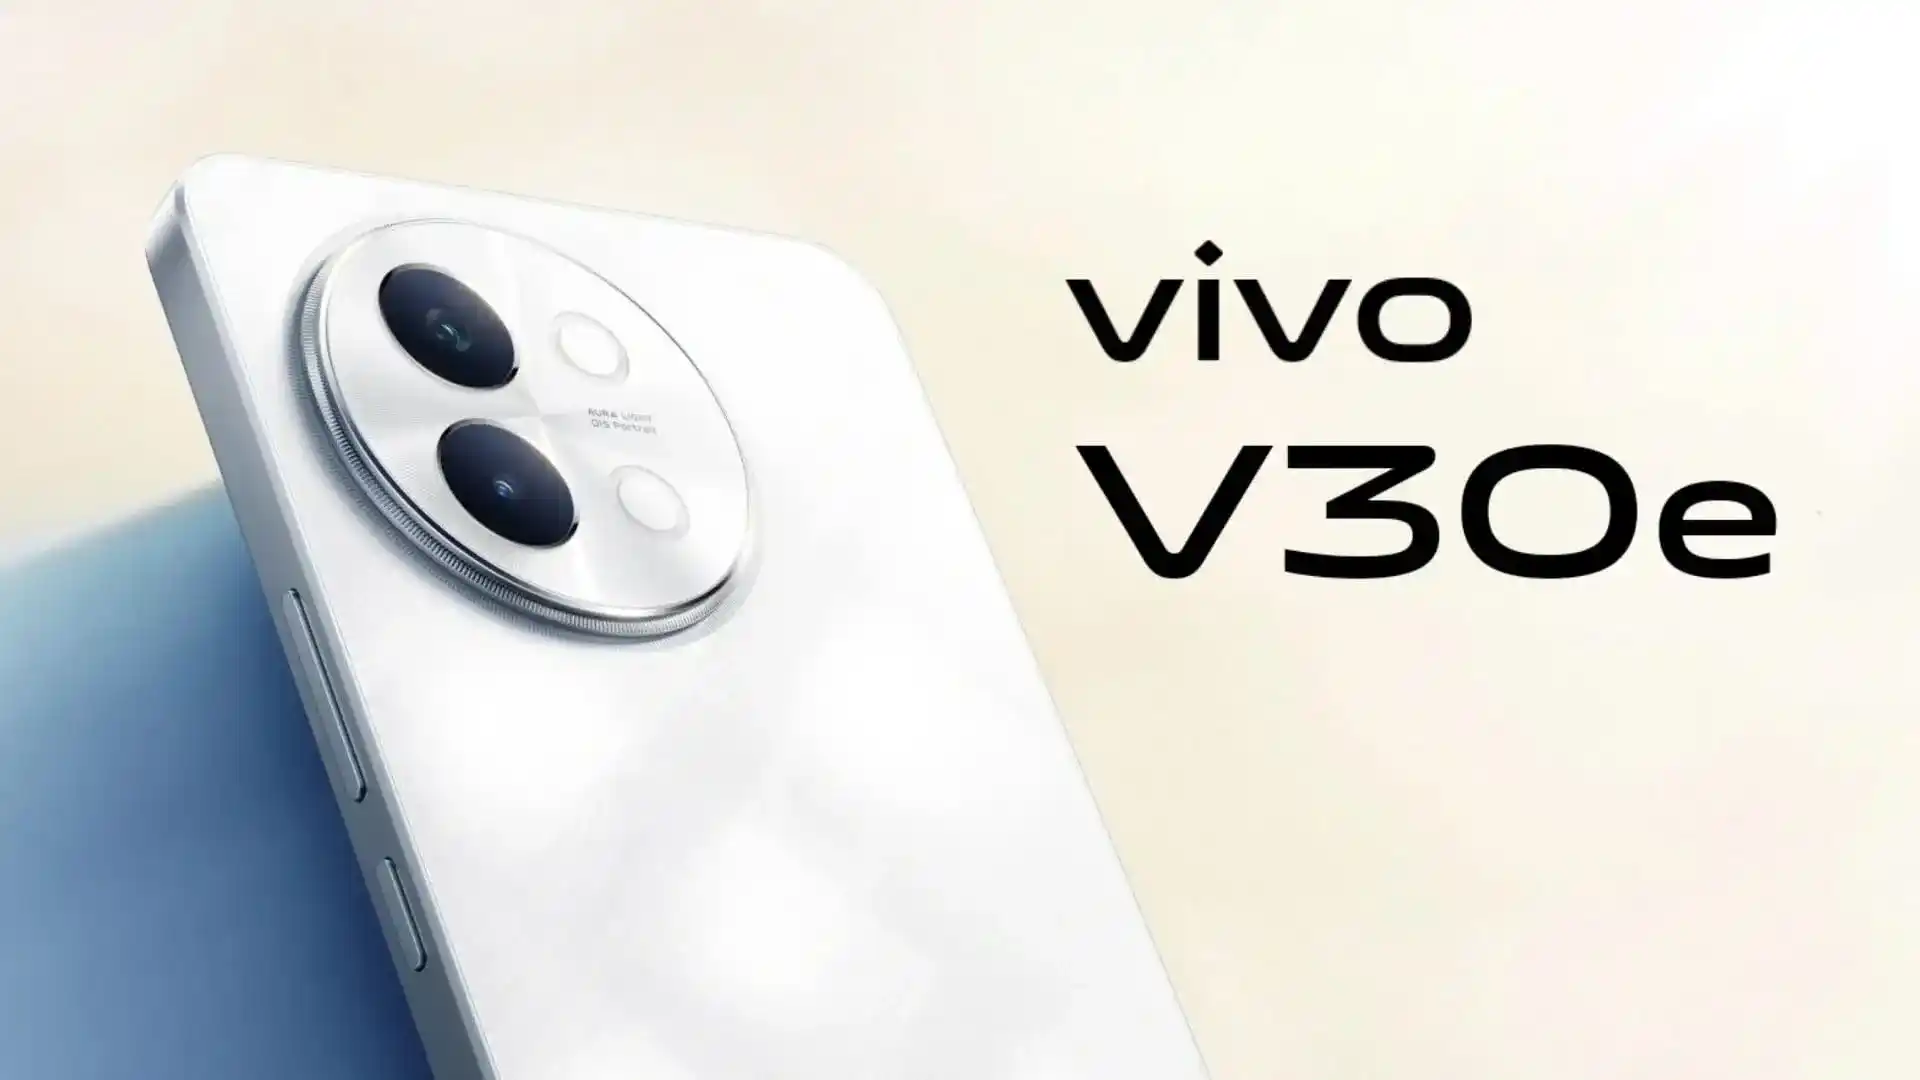 En insider har avslöjat utseendet och specifikationerna för den nya Vivo V30e-smarttelefonen